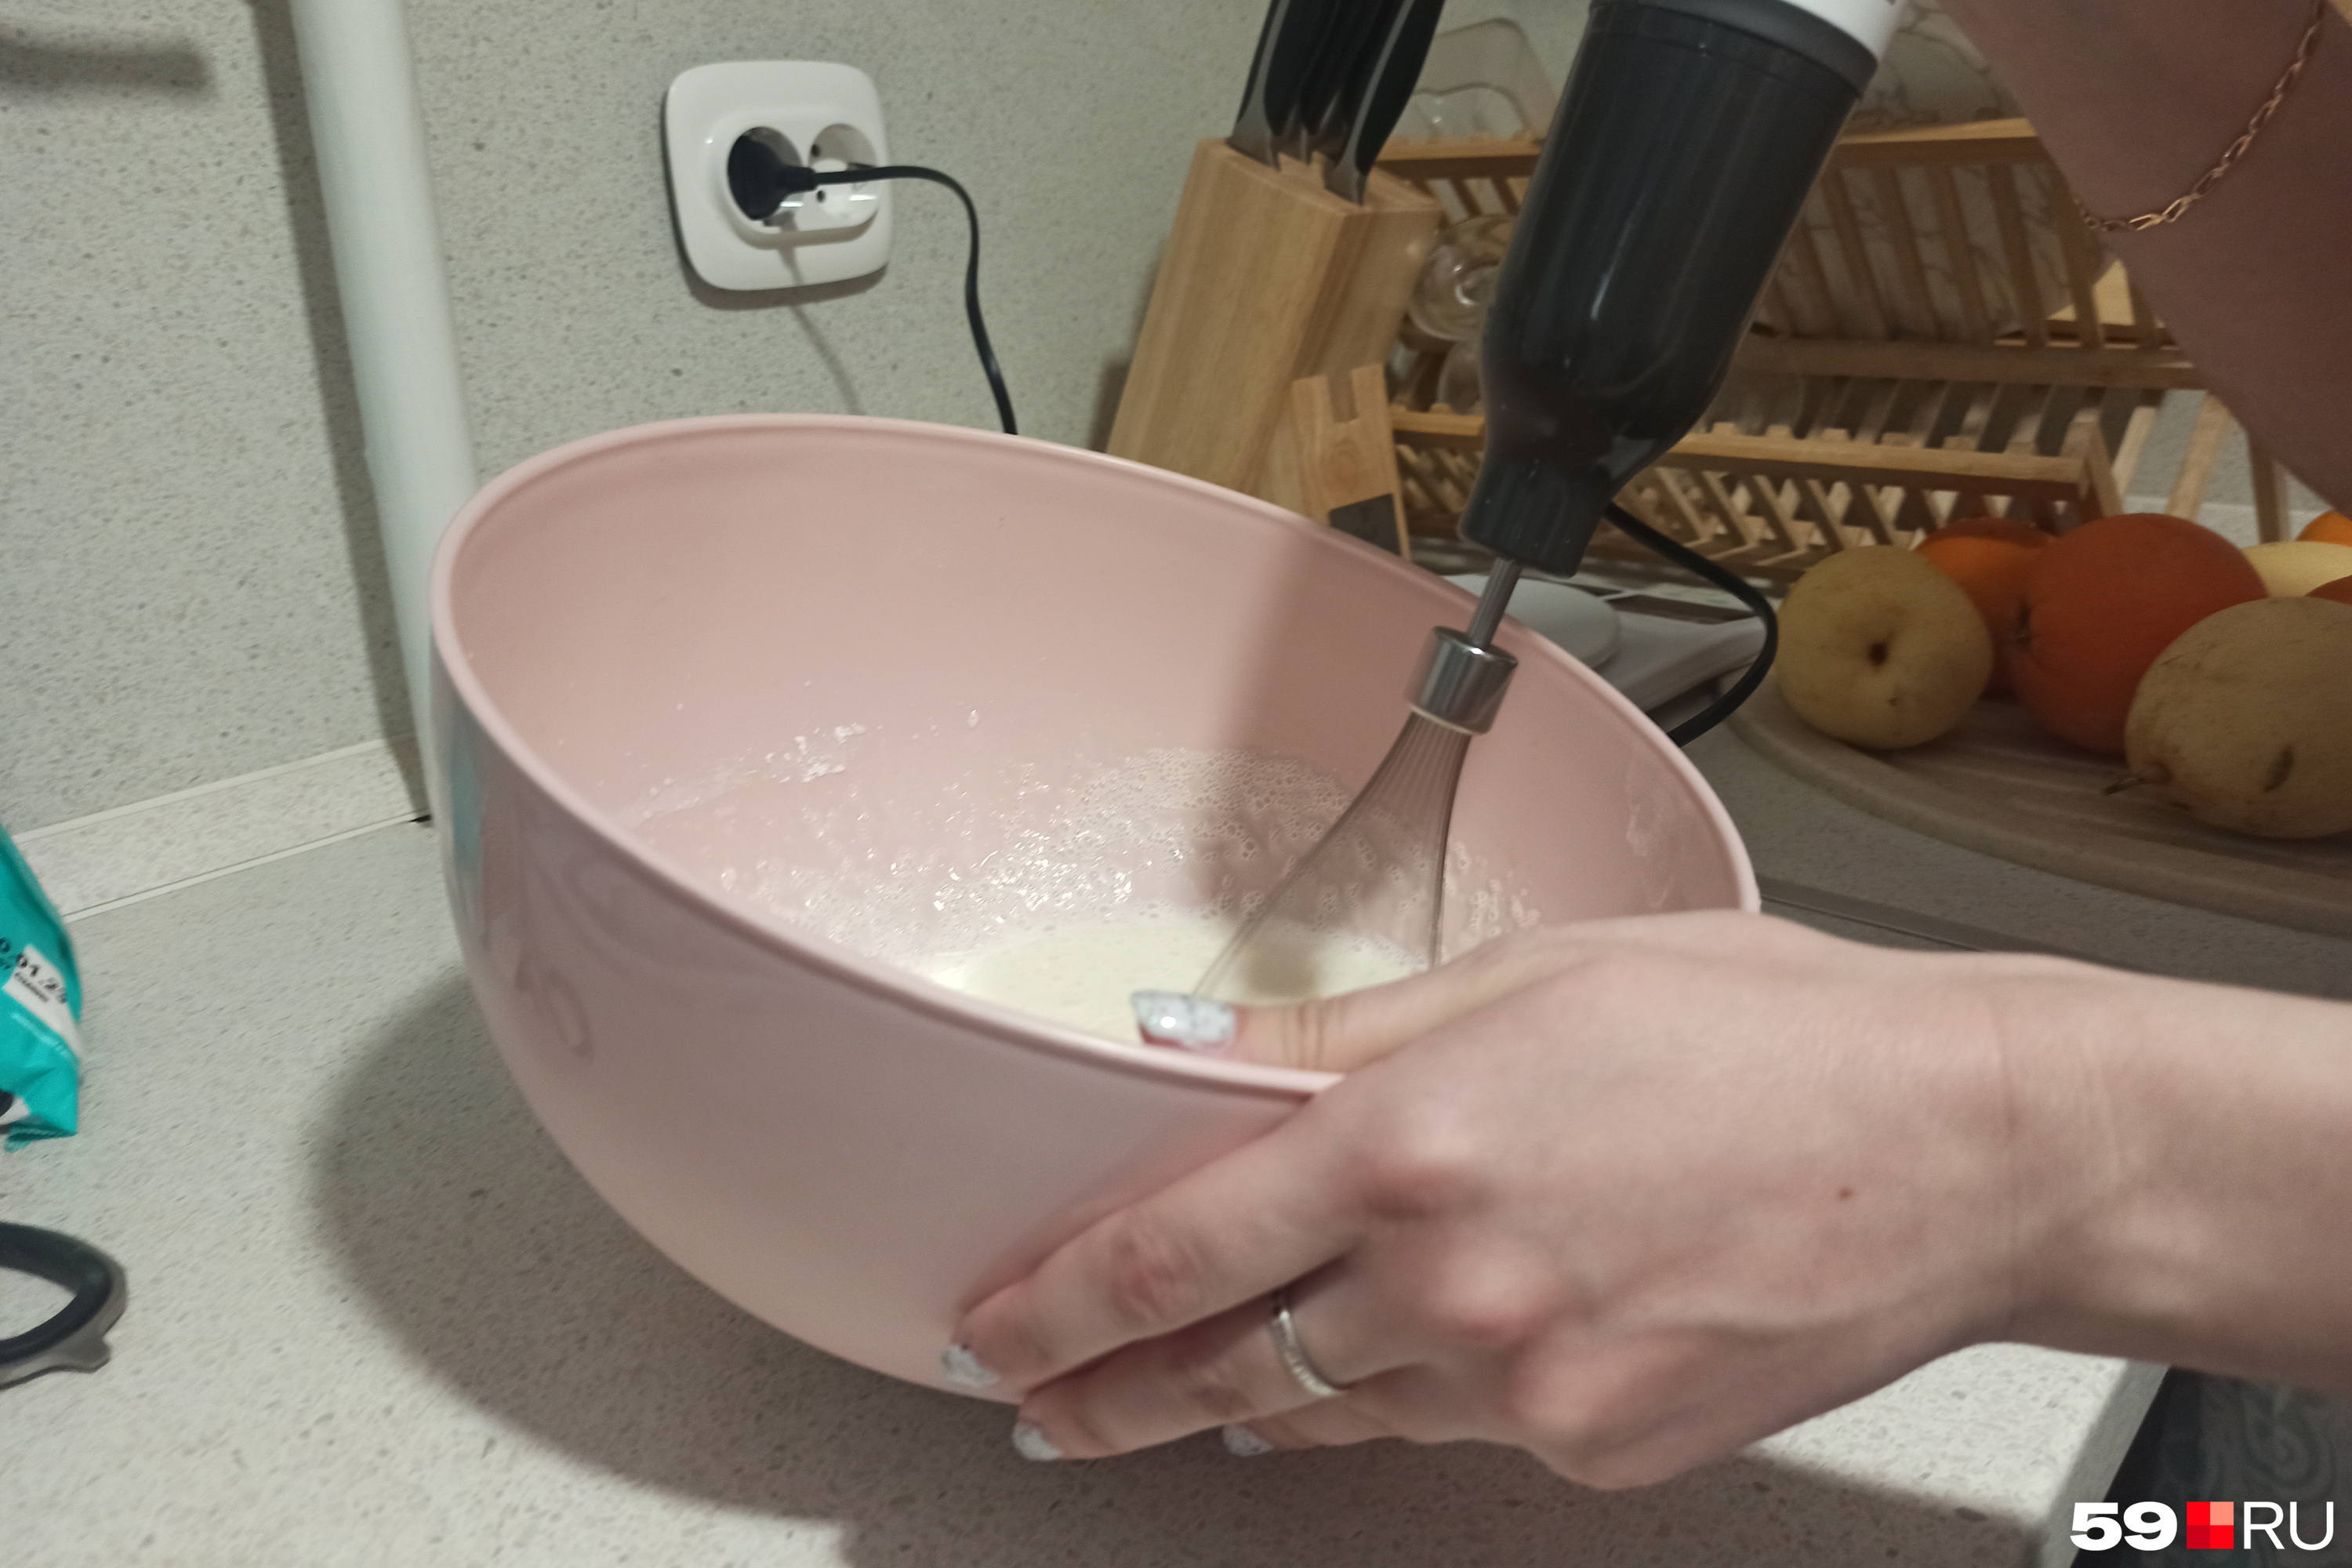 Взбиваем миксером сливки с пудрой, тарелку можно наклонить, чтобы масса скапливалась в одном месте и ее было удобнее взбивать